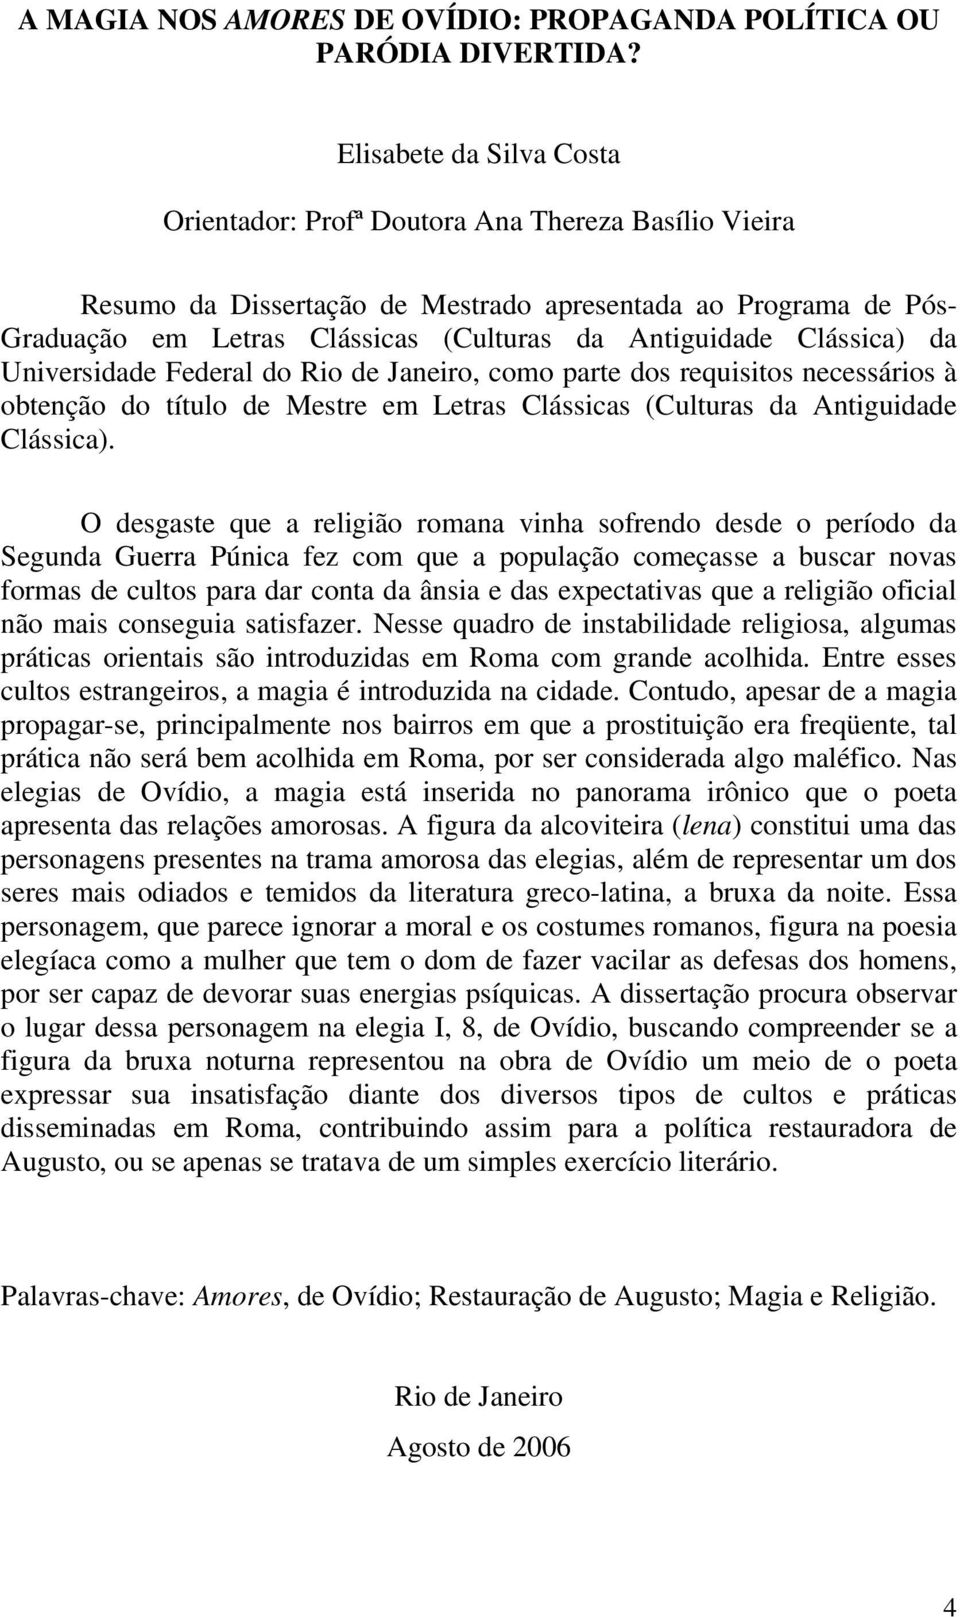 Clássica) da Universidade Federal do Rio de Janeiro, como parte dos requisitos necessários à obtenção do título de Mestre em Letras Clássicas (Culturas da Antiguidade Clássica).